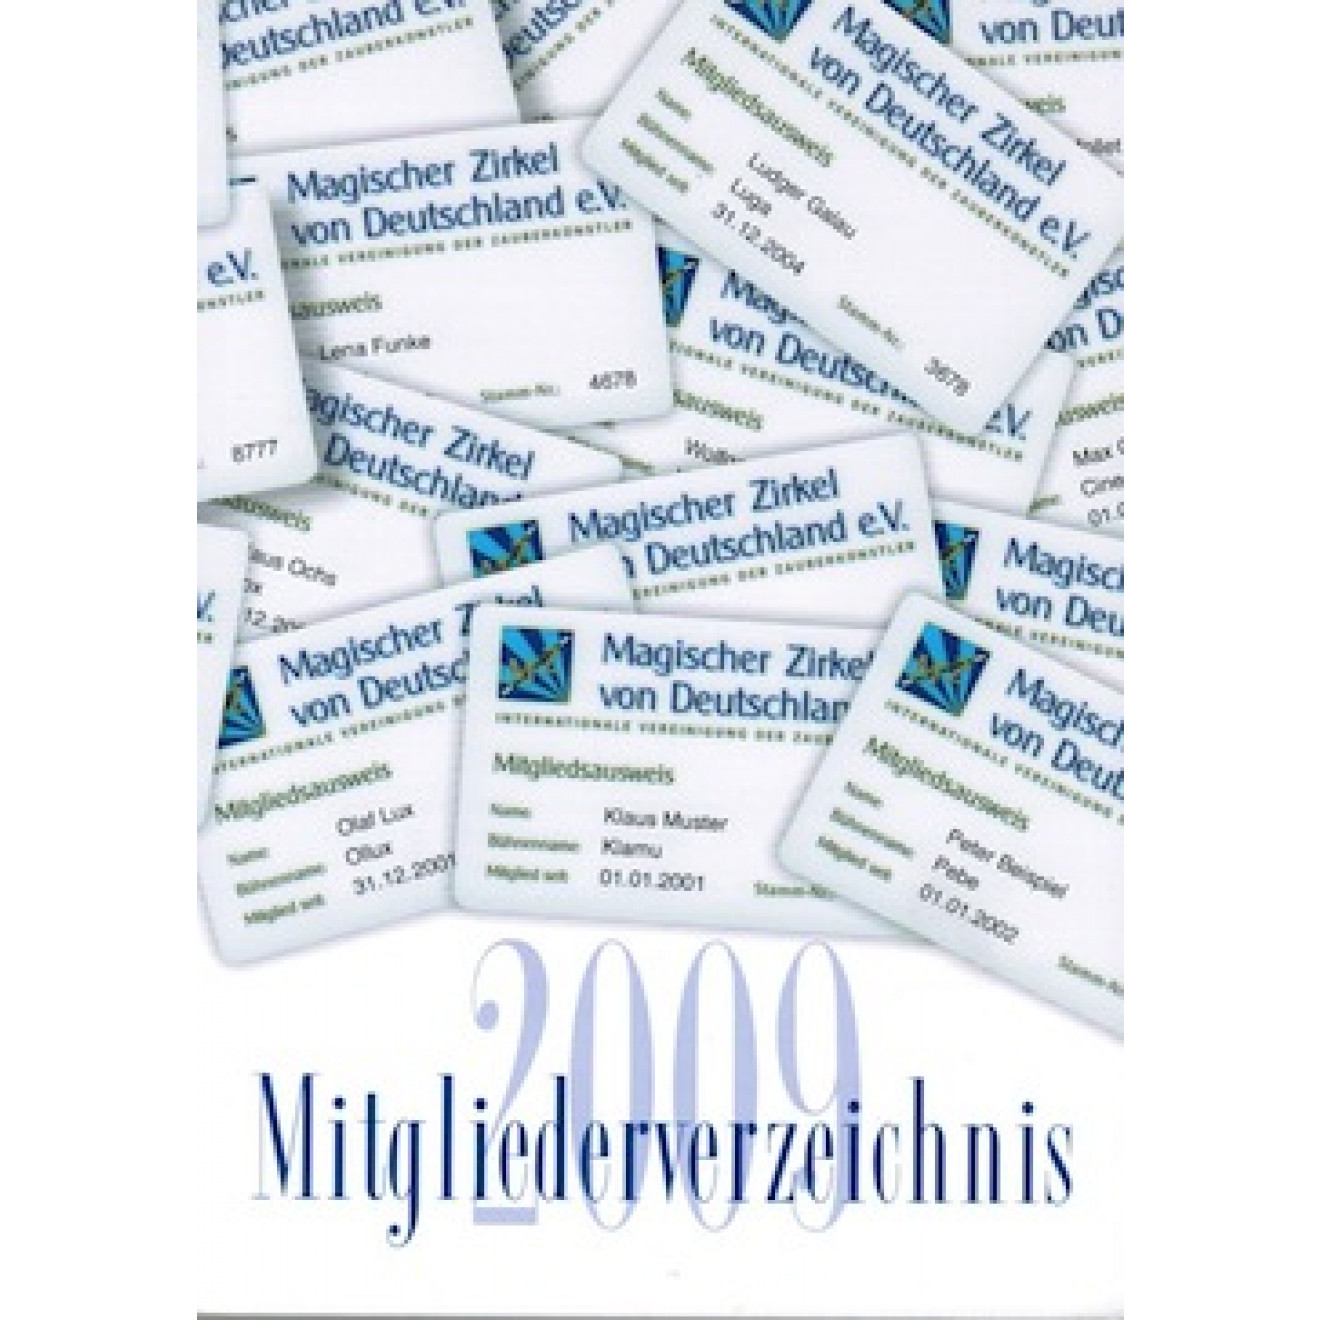 Mitgliederverzeichnis MZvD 2009